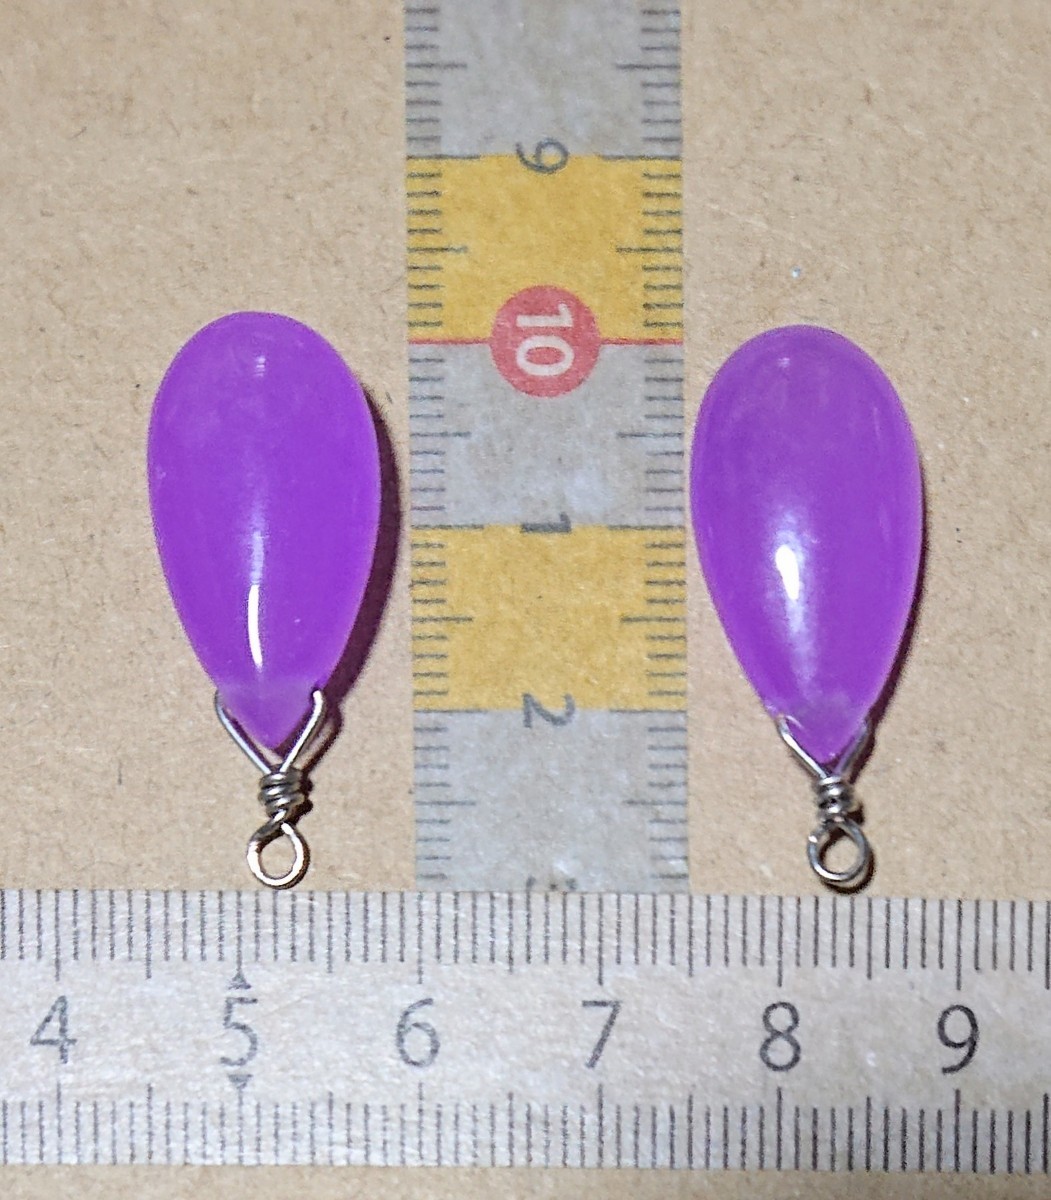  quartzite. accessory parts pastel color purple series grape karupis color natural stone / earrings, pendant, strap, charm / arrange 